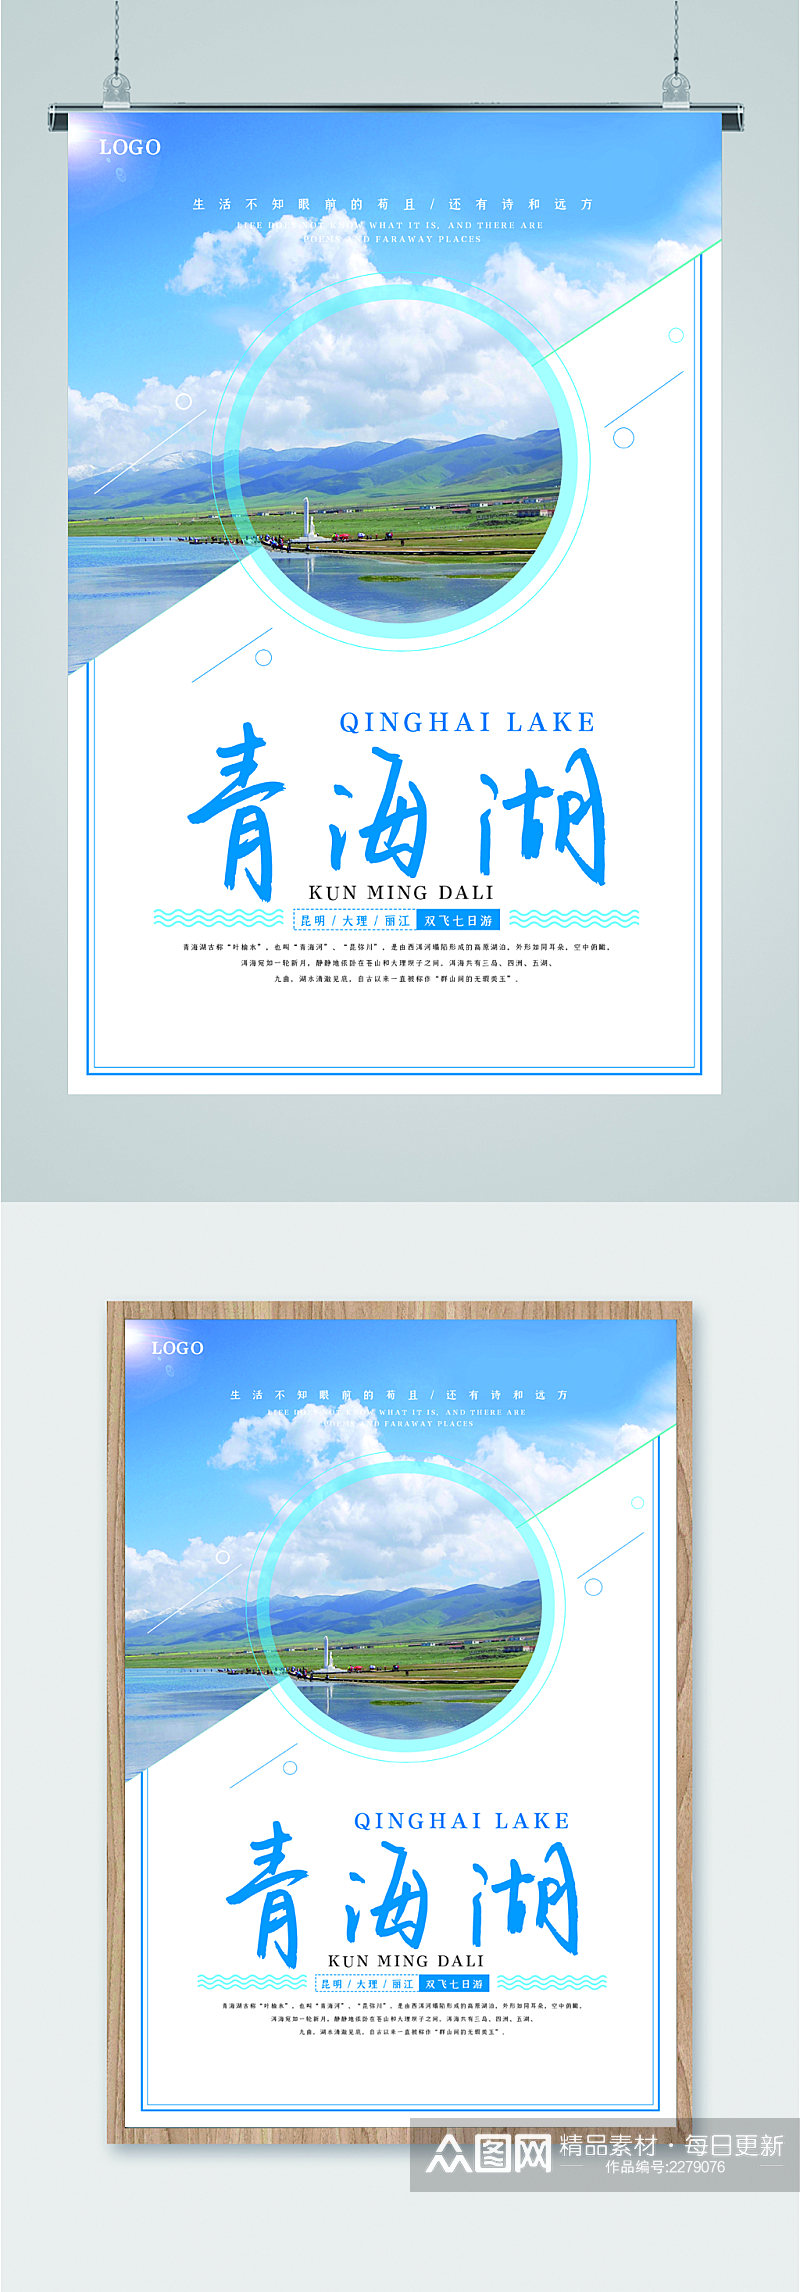 青海湖旅游景点海报素材